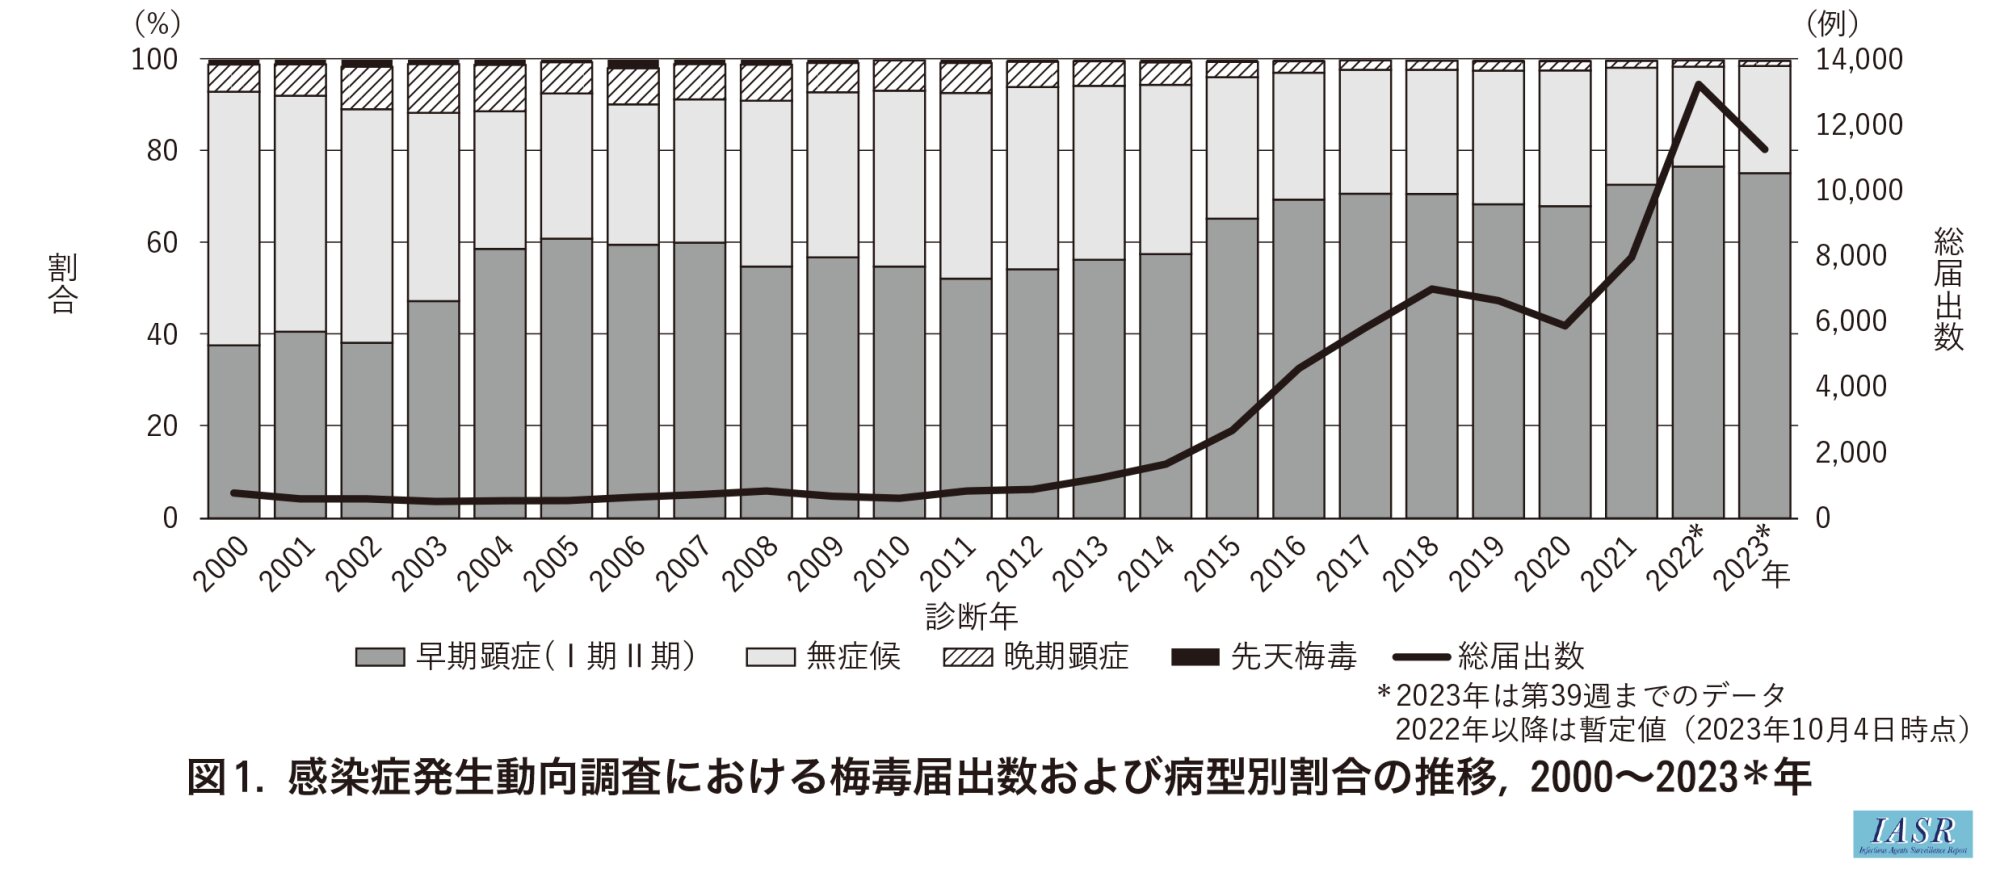 2012年前後から梅毒の届出数（黒の折れ線グラフ）が増えていることがわかります。国立感染症研究所、感染症発生動向調査における梅毒届出数および病型別割合の推移、2000〜2023年より